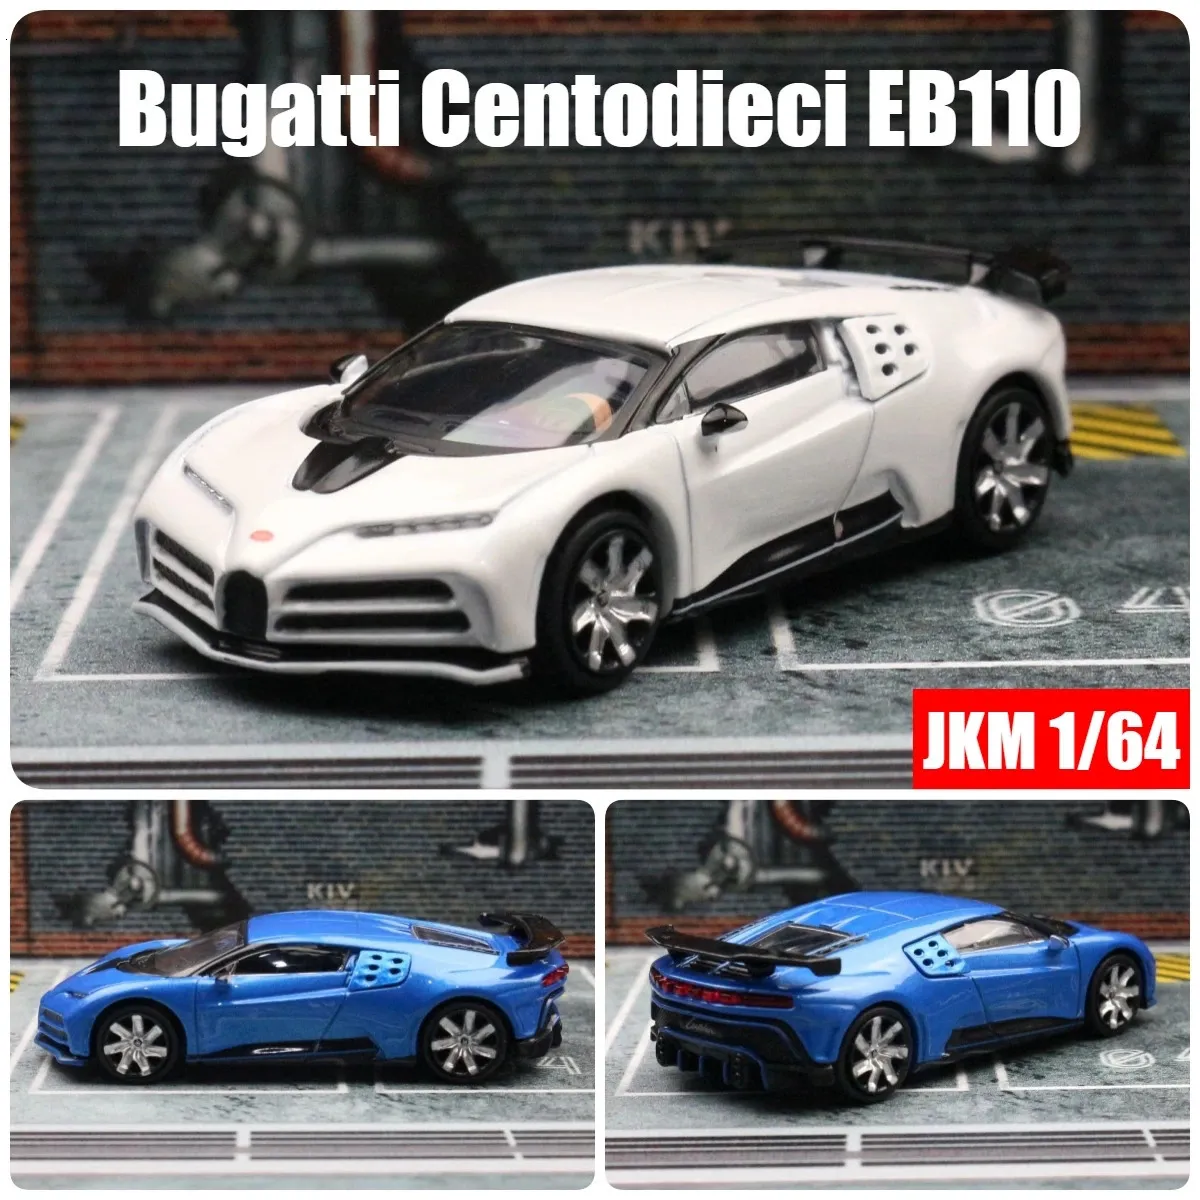 1 64 Bugatti Centodieci EB110 Миниатюрный игрушечный автомобиль 1/64 JKM Racing Model Бесплатные колеса Diecast сплав Metal Collection Подарок 240402